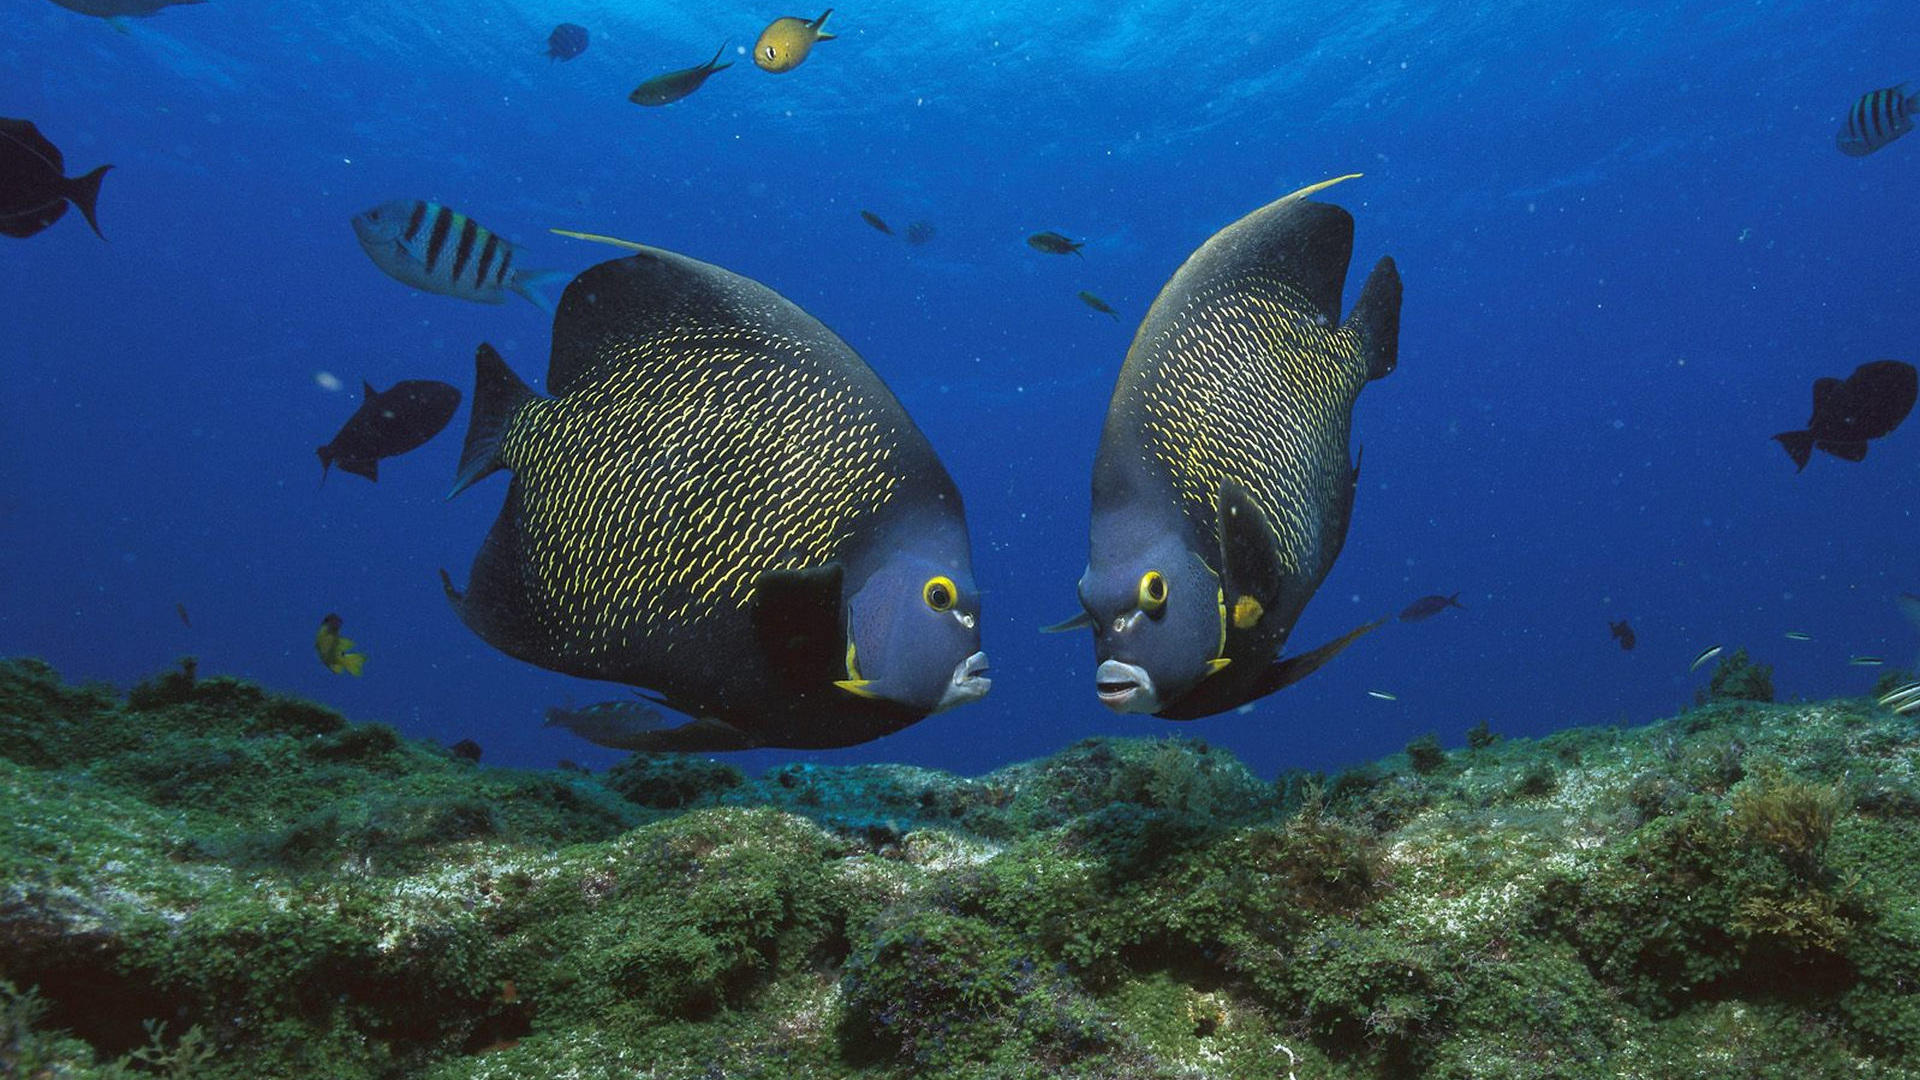 دانلود تصویر بسیار زیبا از ماهی های قشنگ در آب 